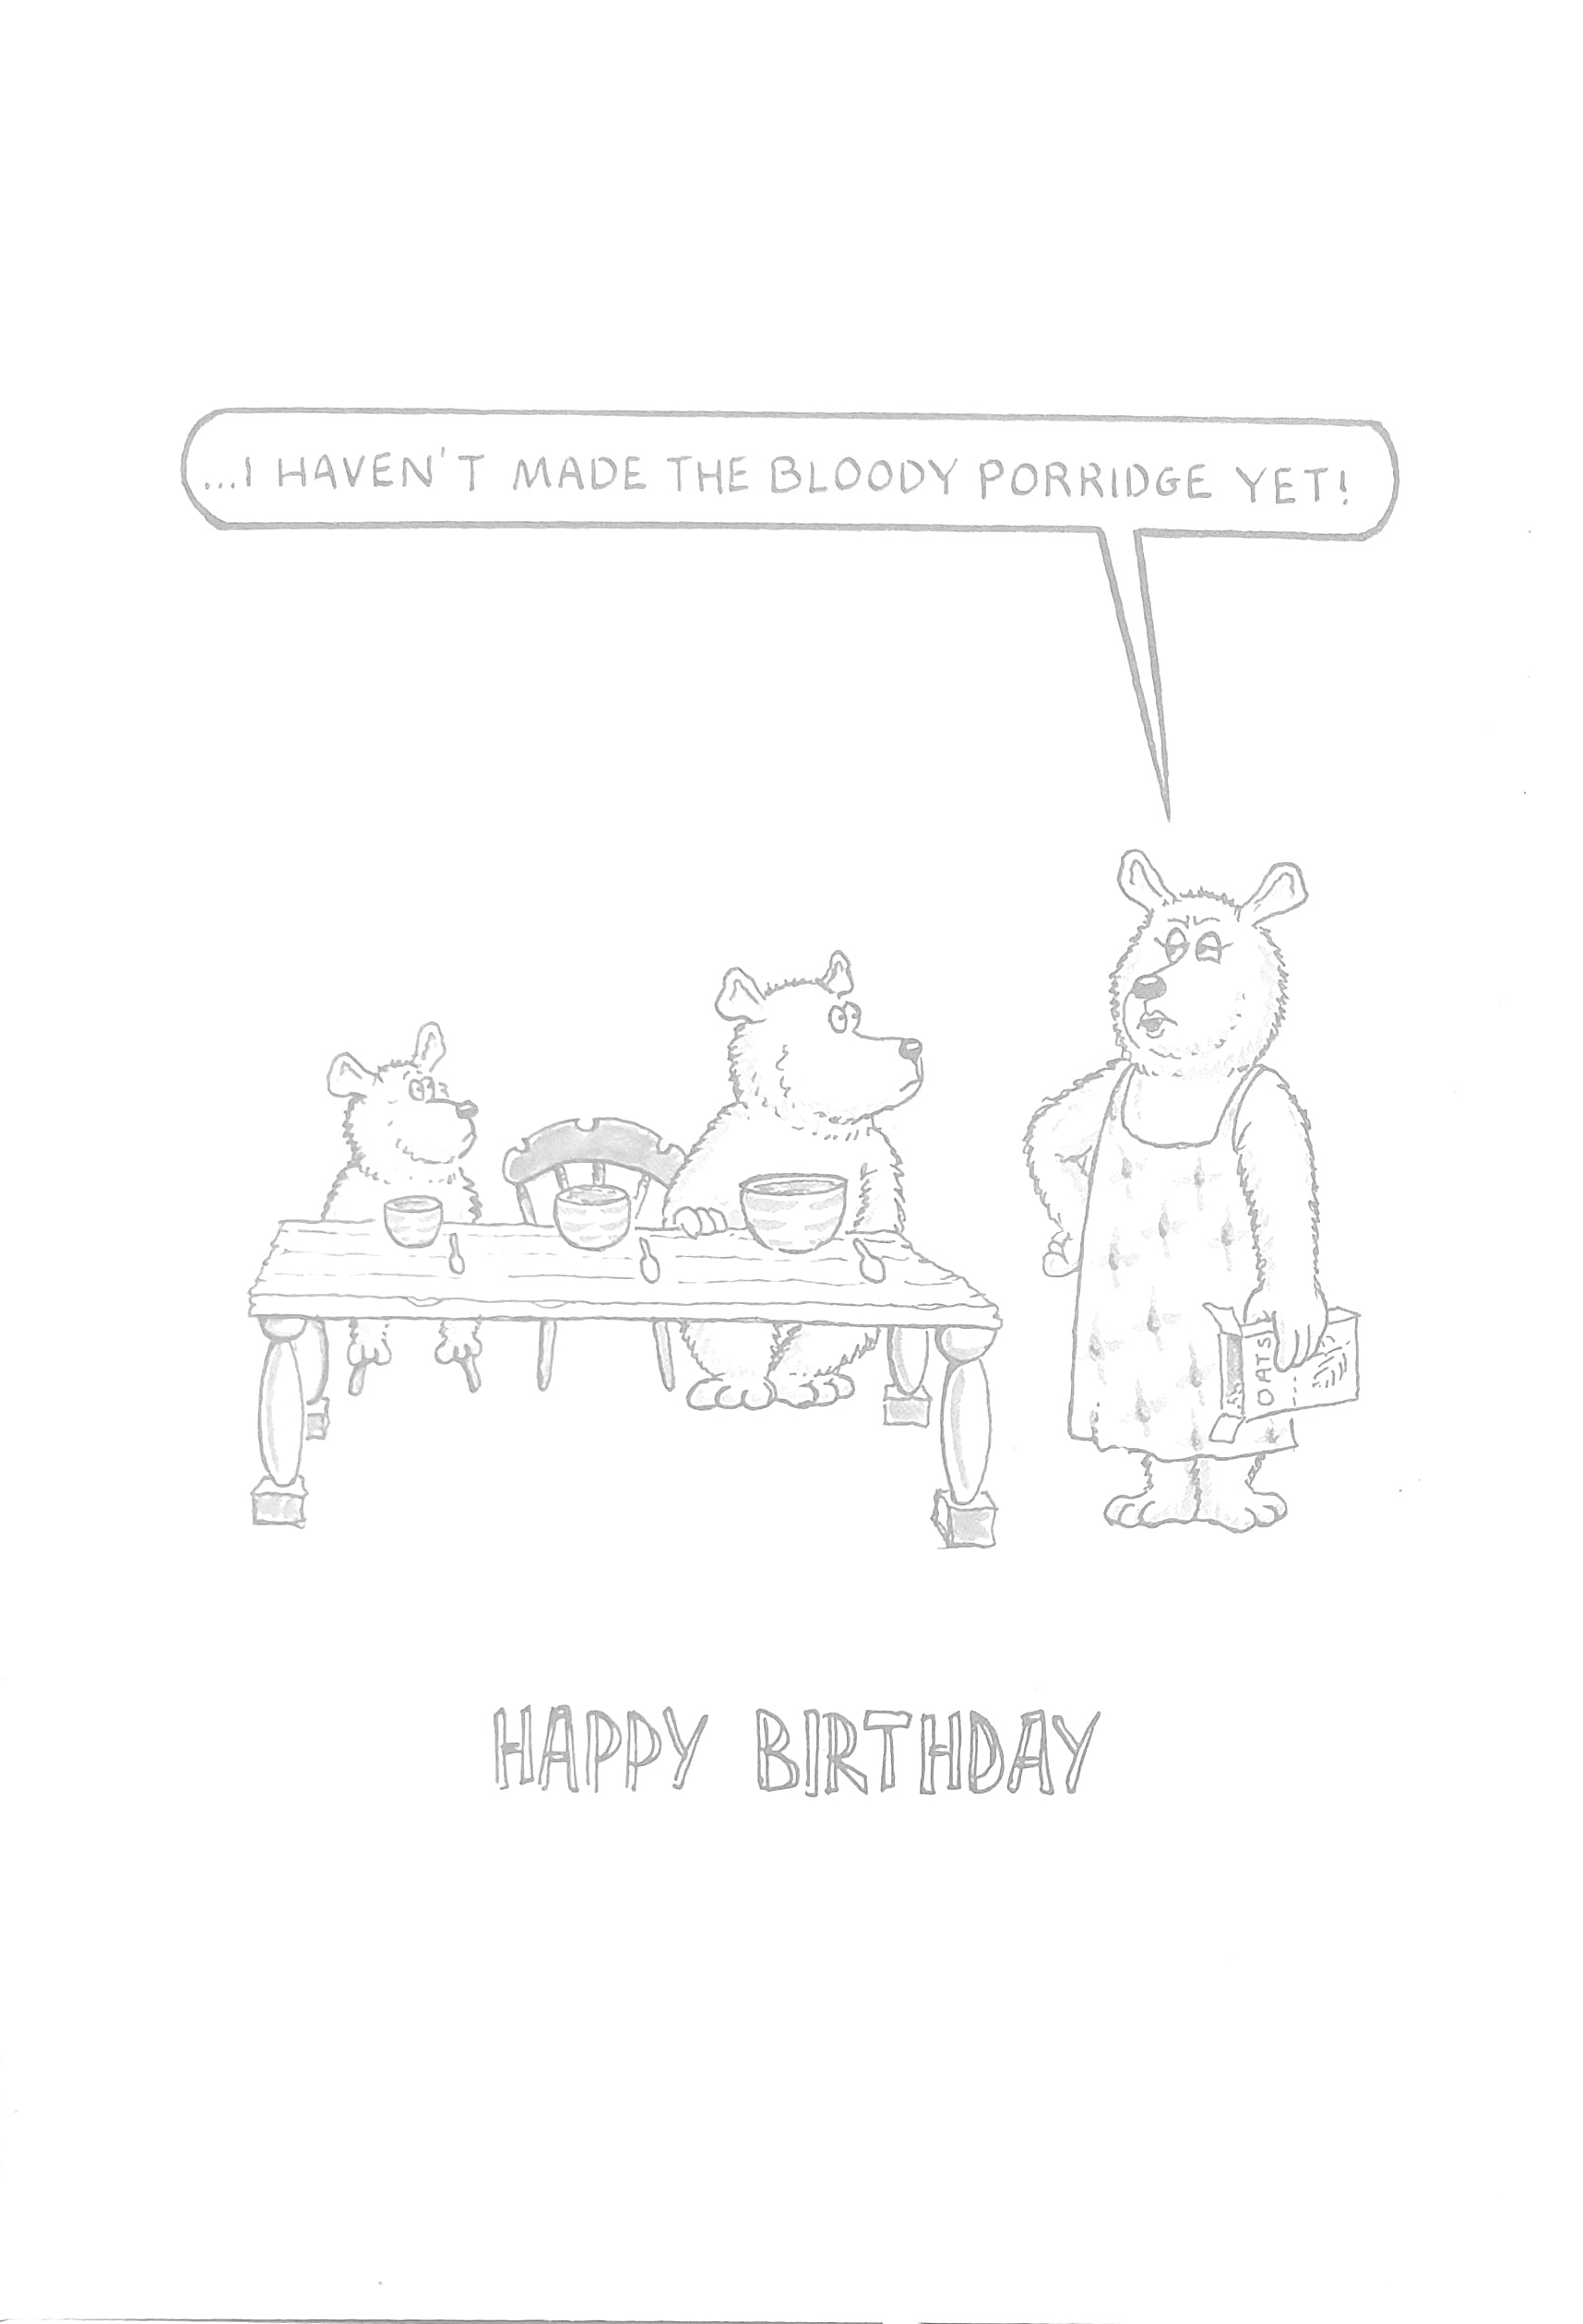 Humourous Birthday Card - Porridge